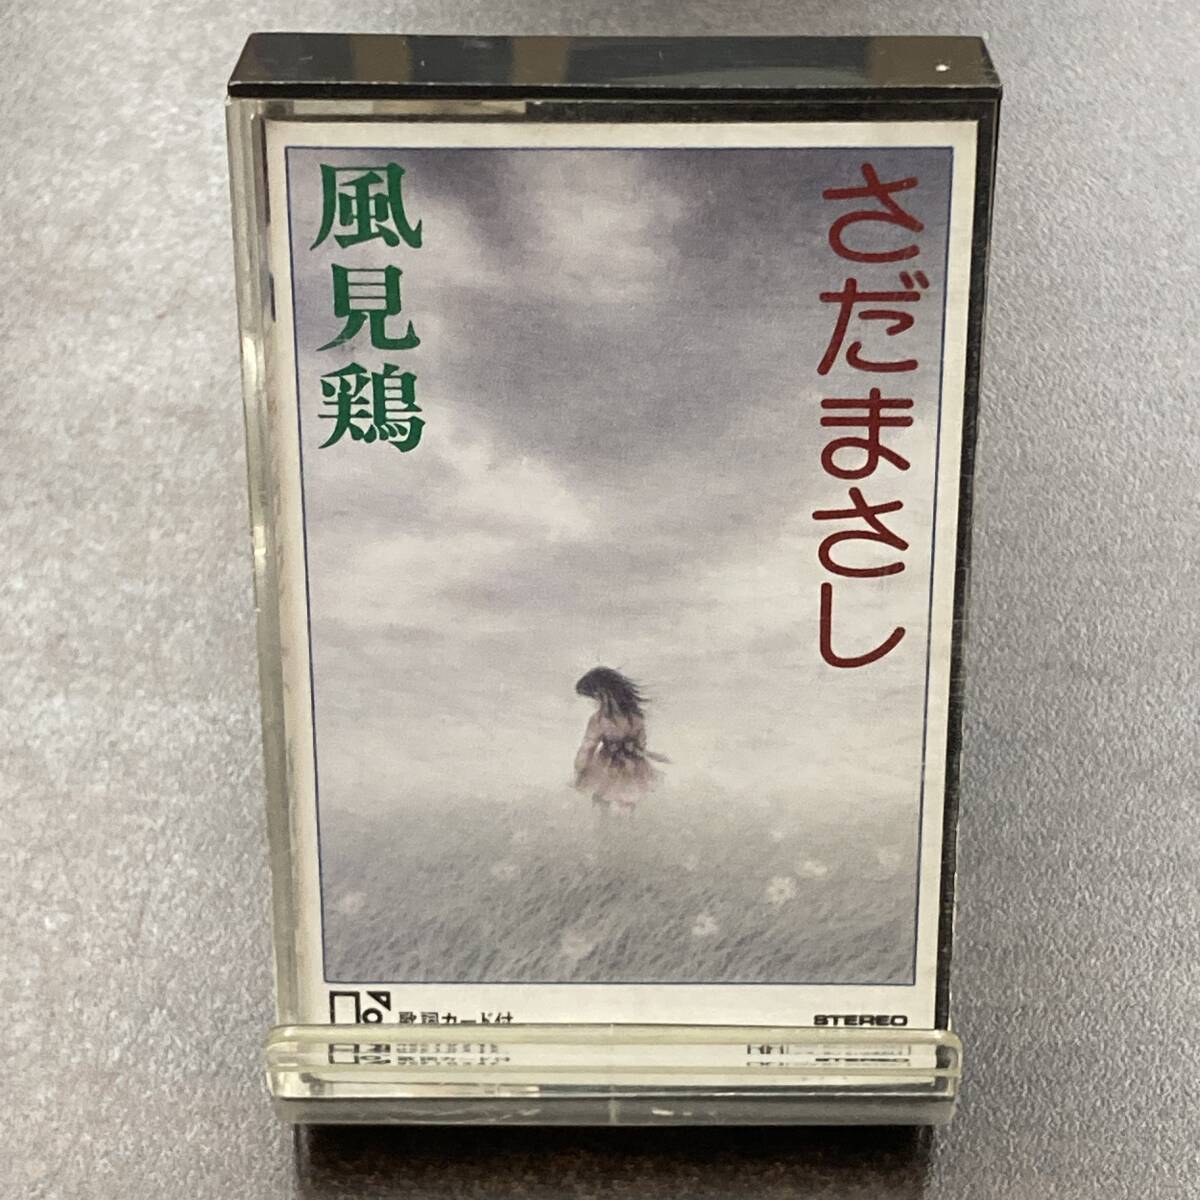 1164M さだまさし 風見鶏 カセットテープ / Masashi Sada Citypop Cassette Tapeの画像1